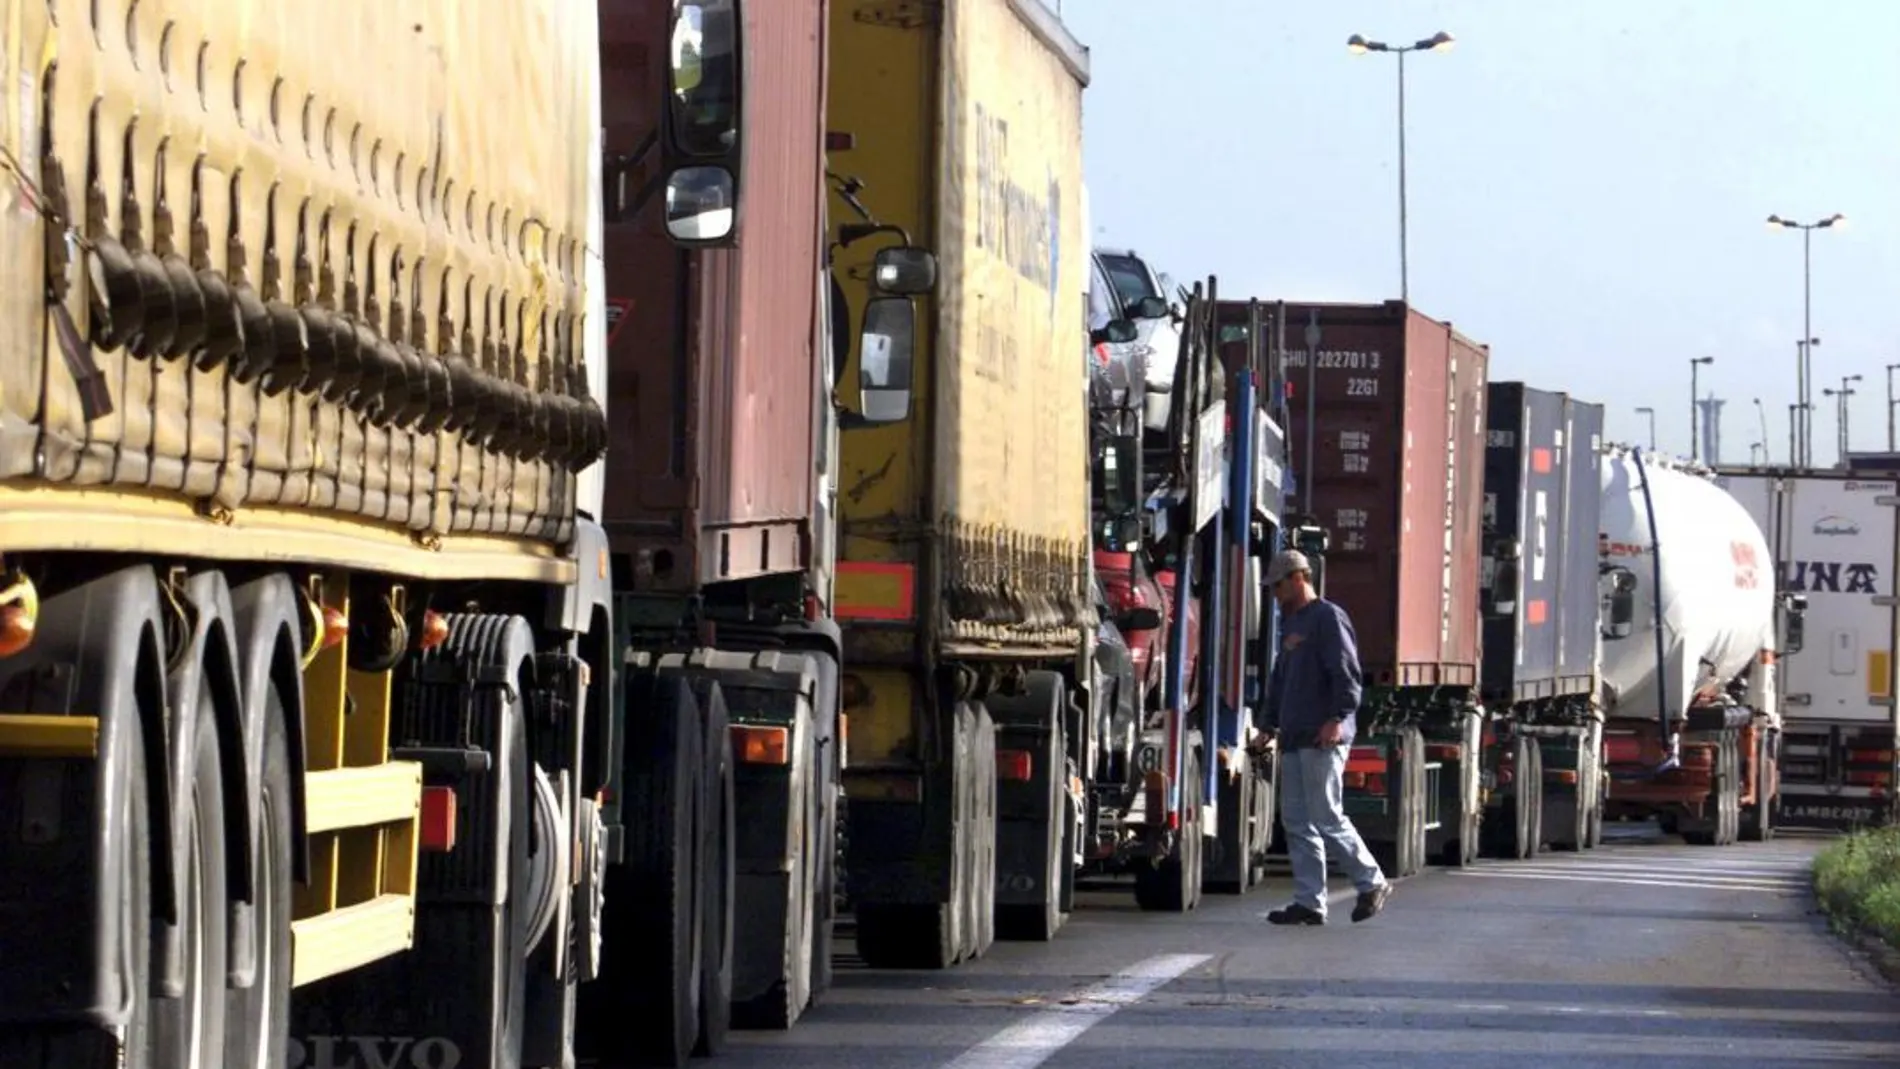 Francia prepara un impuesto para los camiones que circulan por sus carreteras